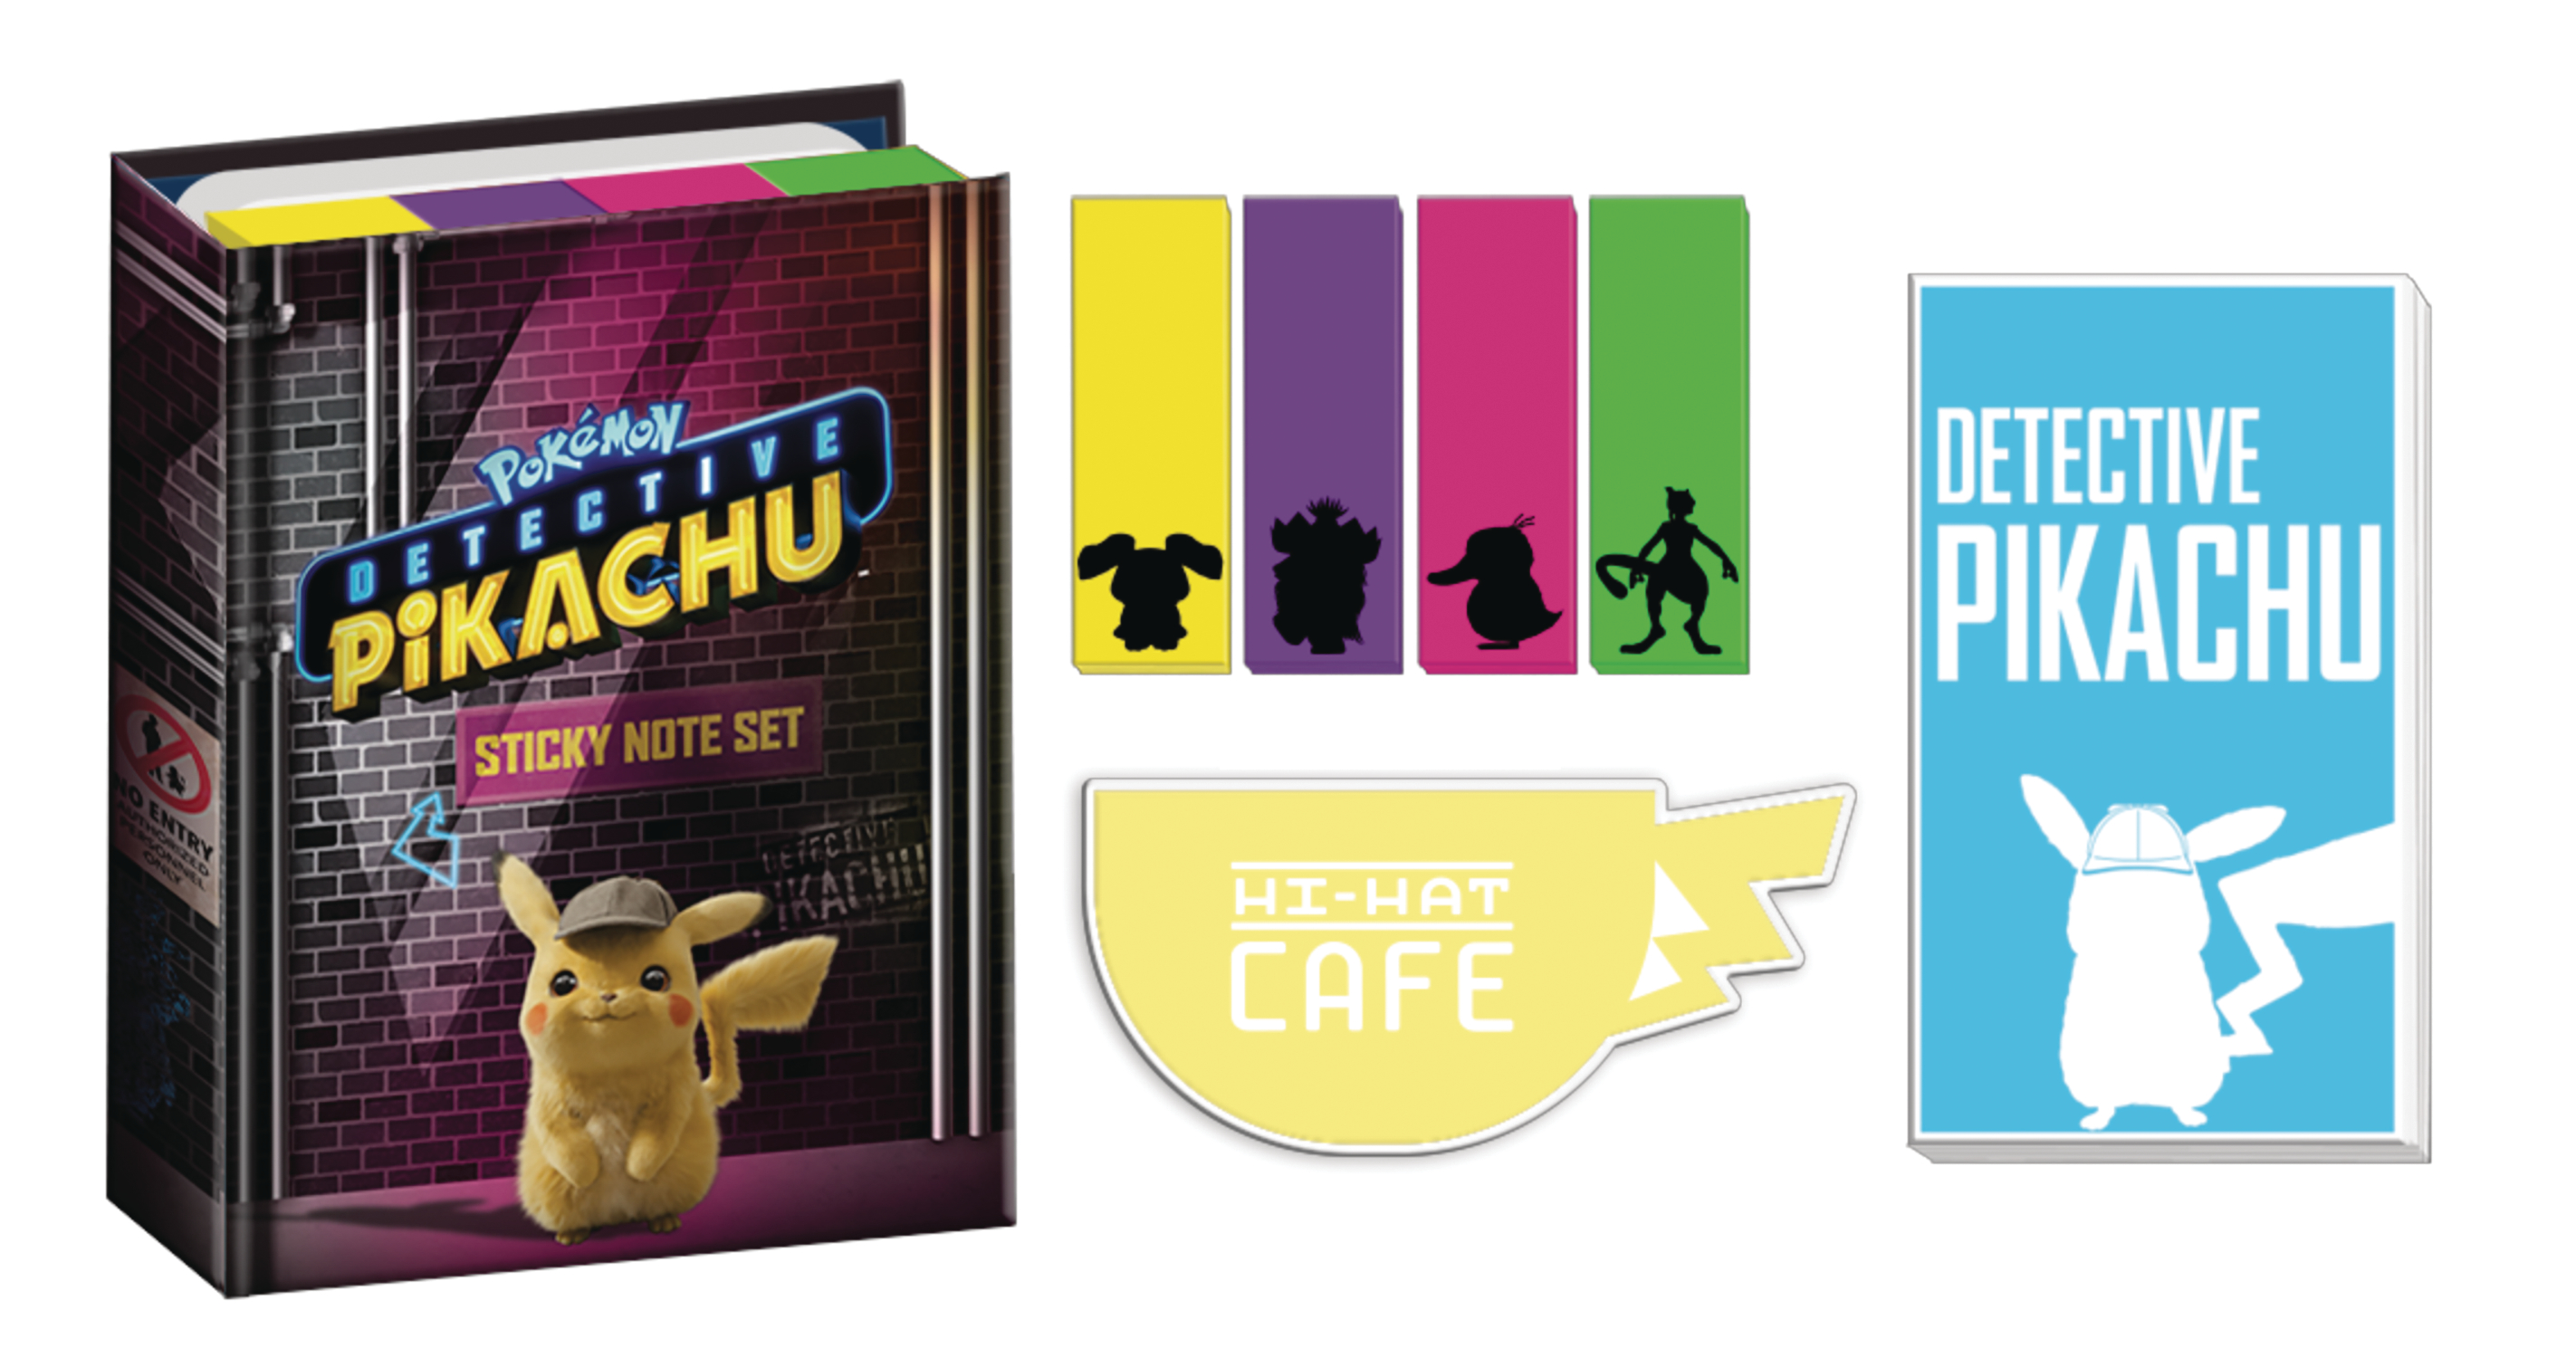 Nov11 Pokemon Detective Pikachu Sticky Note Box Set Previews World